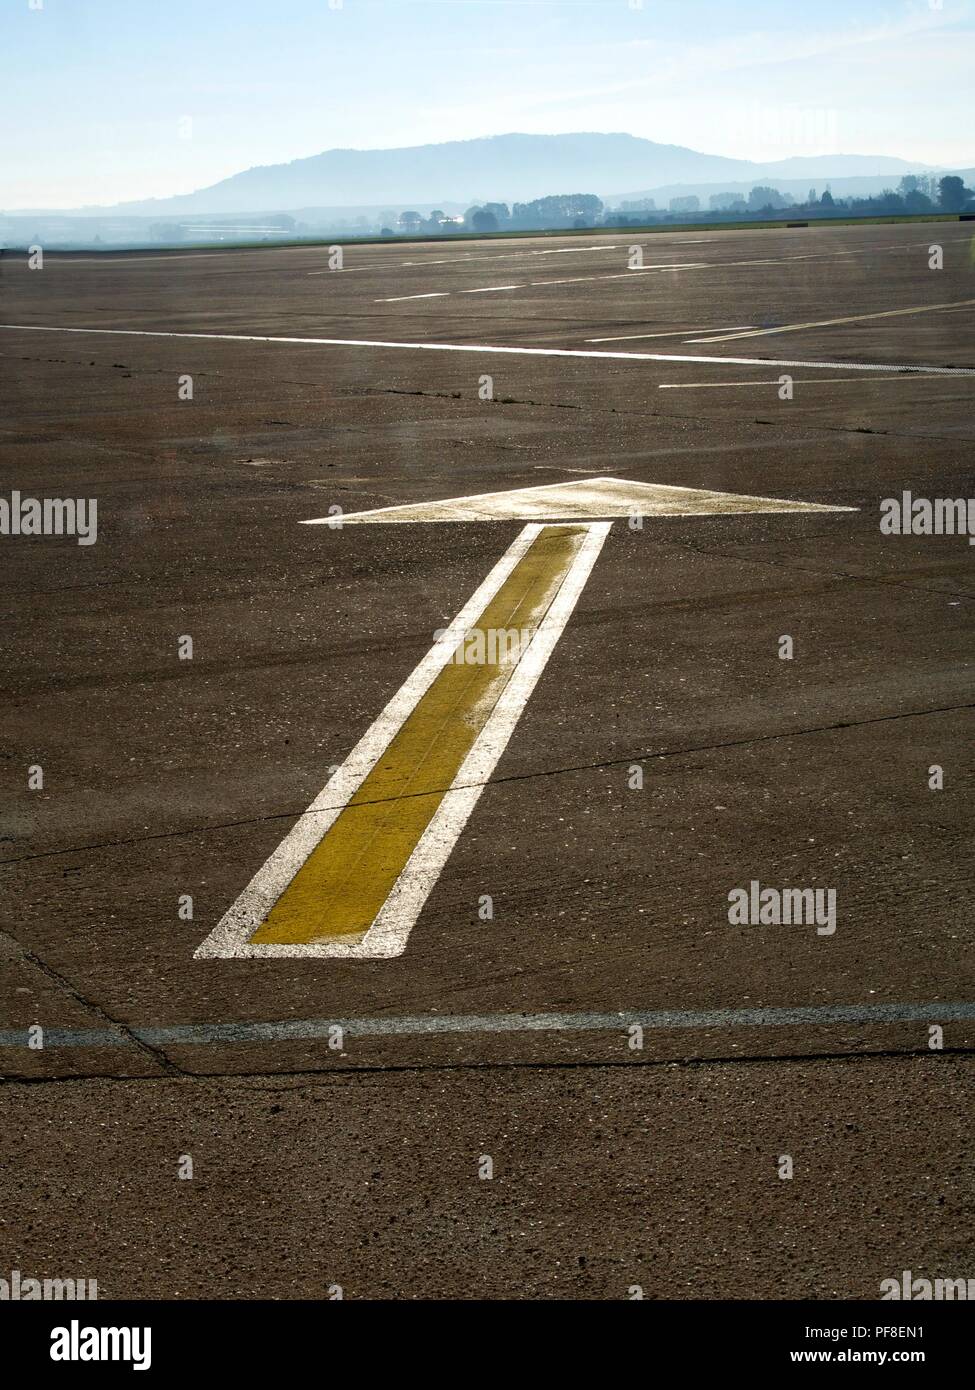 Scatto verticale ad angolo alto di una freccia dipinta di giallo a terra che punta dritto in avanti. Asfalto di un aeroporto. Foto Stock